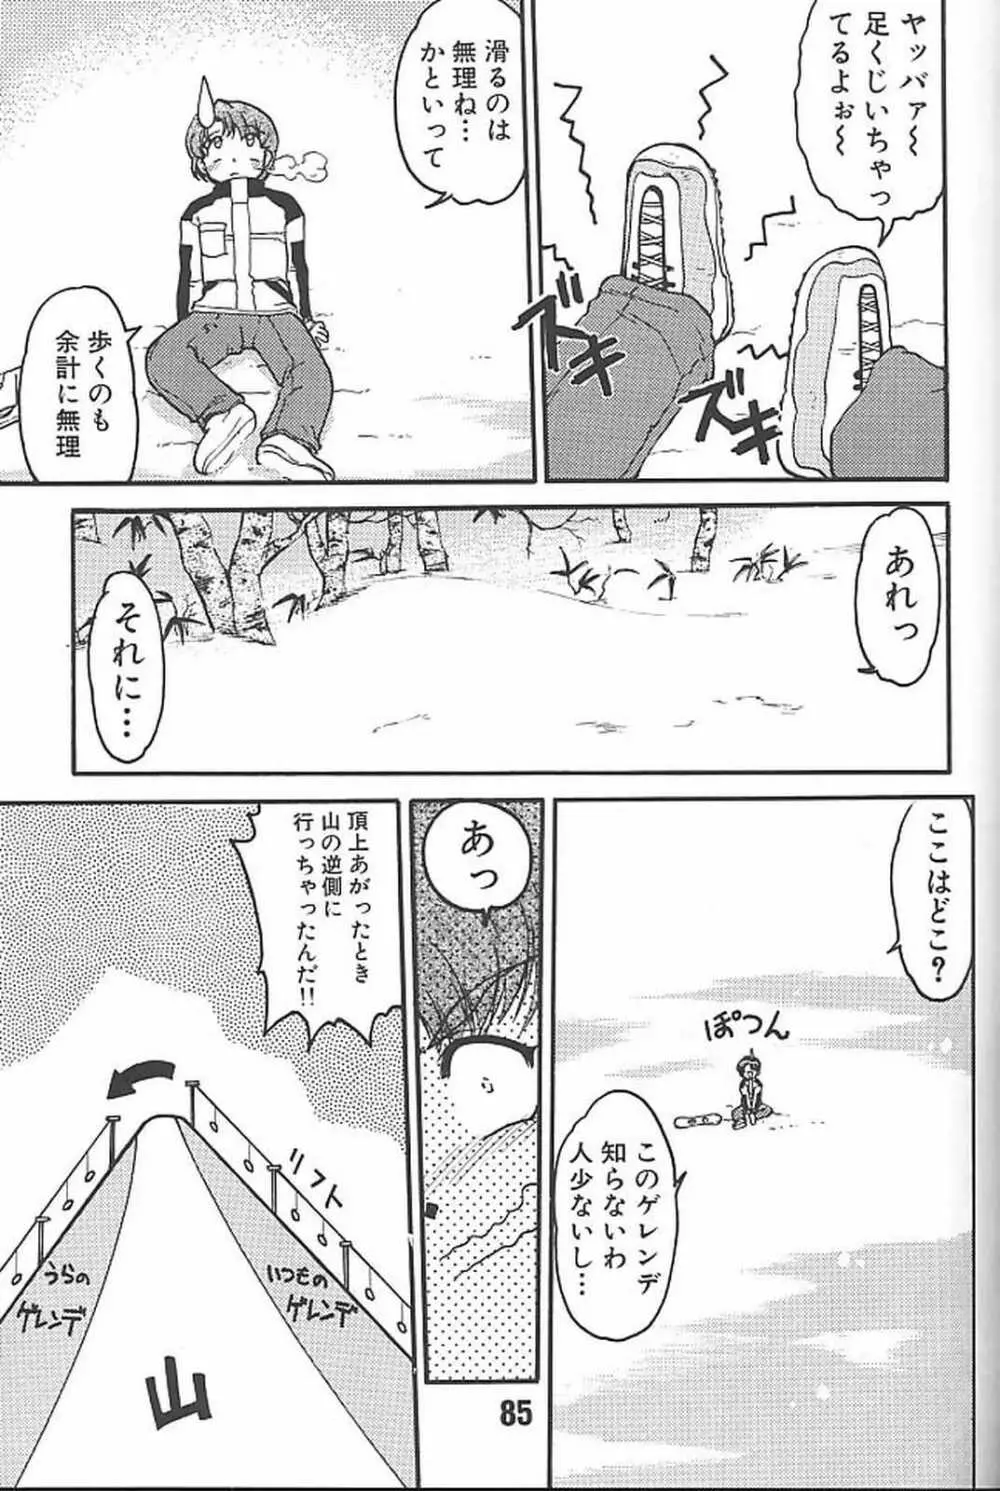 ばななサル軍団 参 - page84